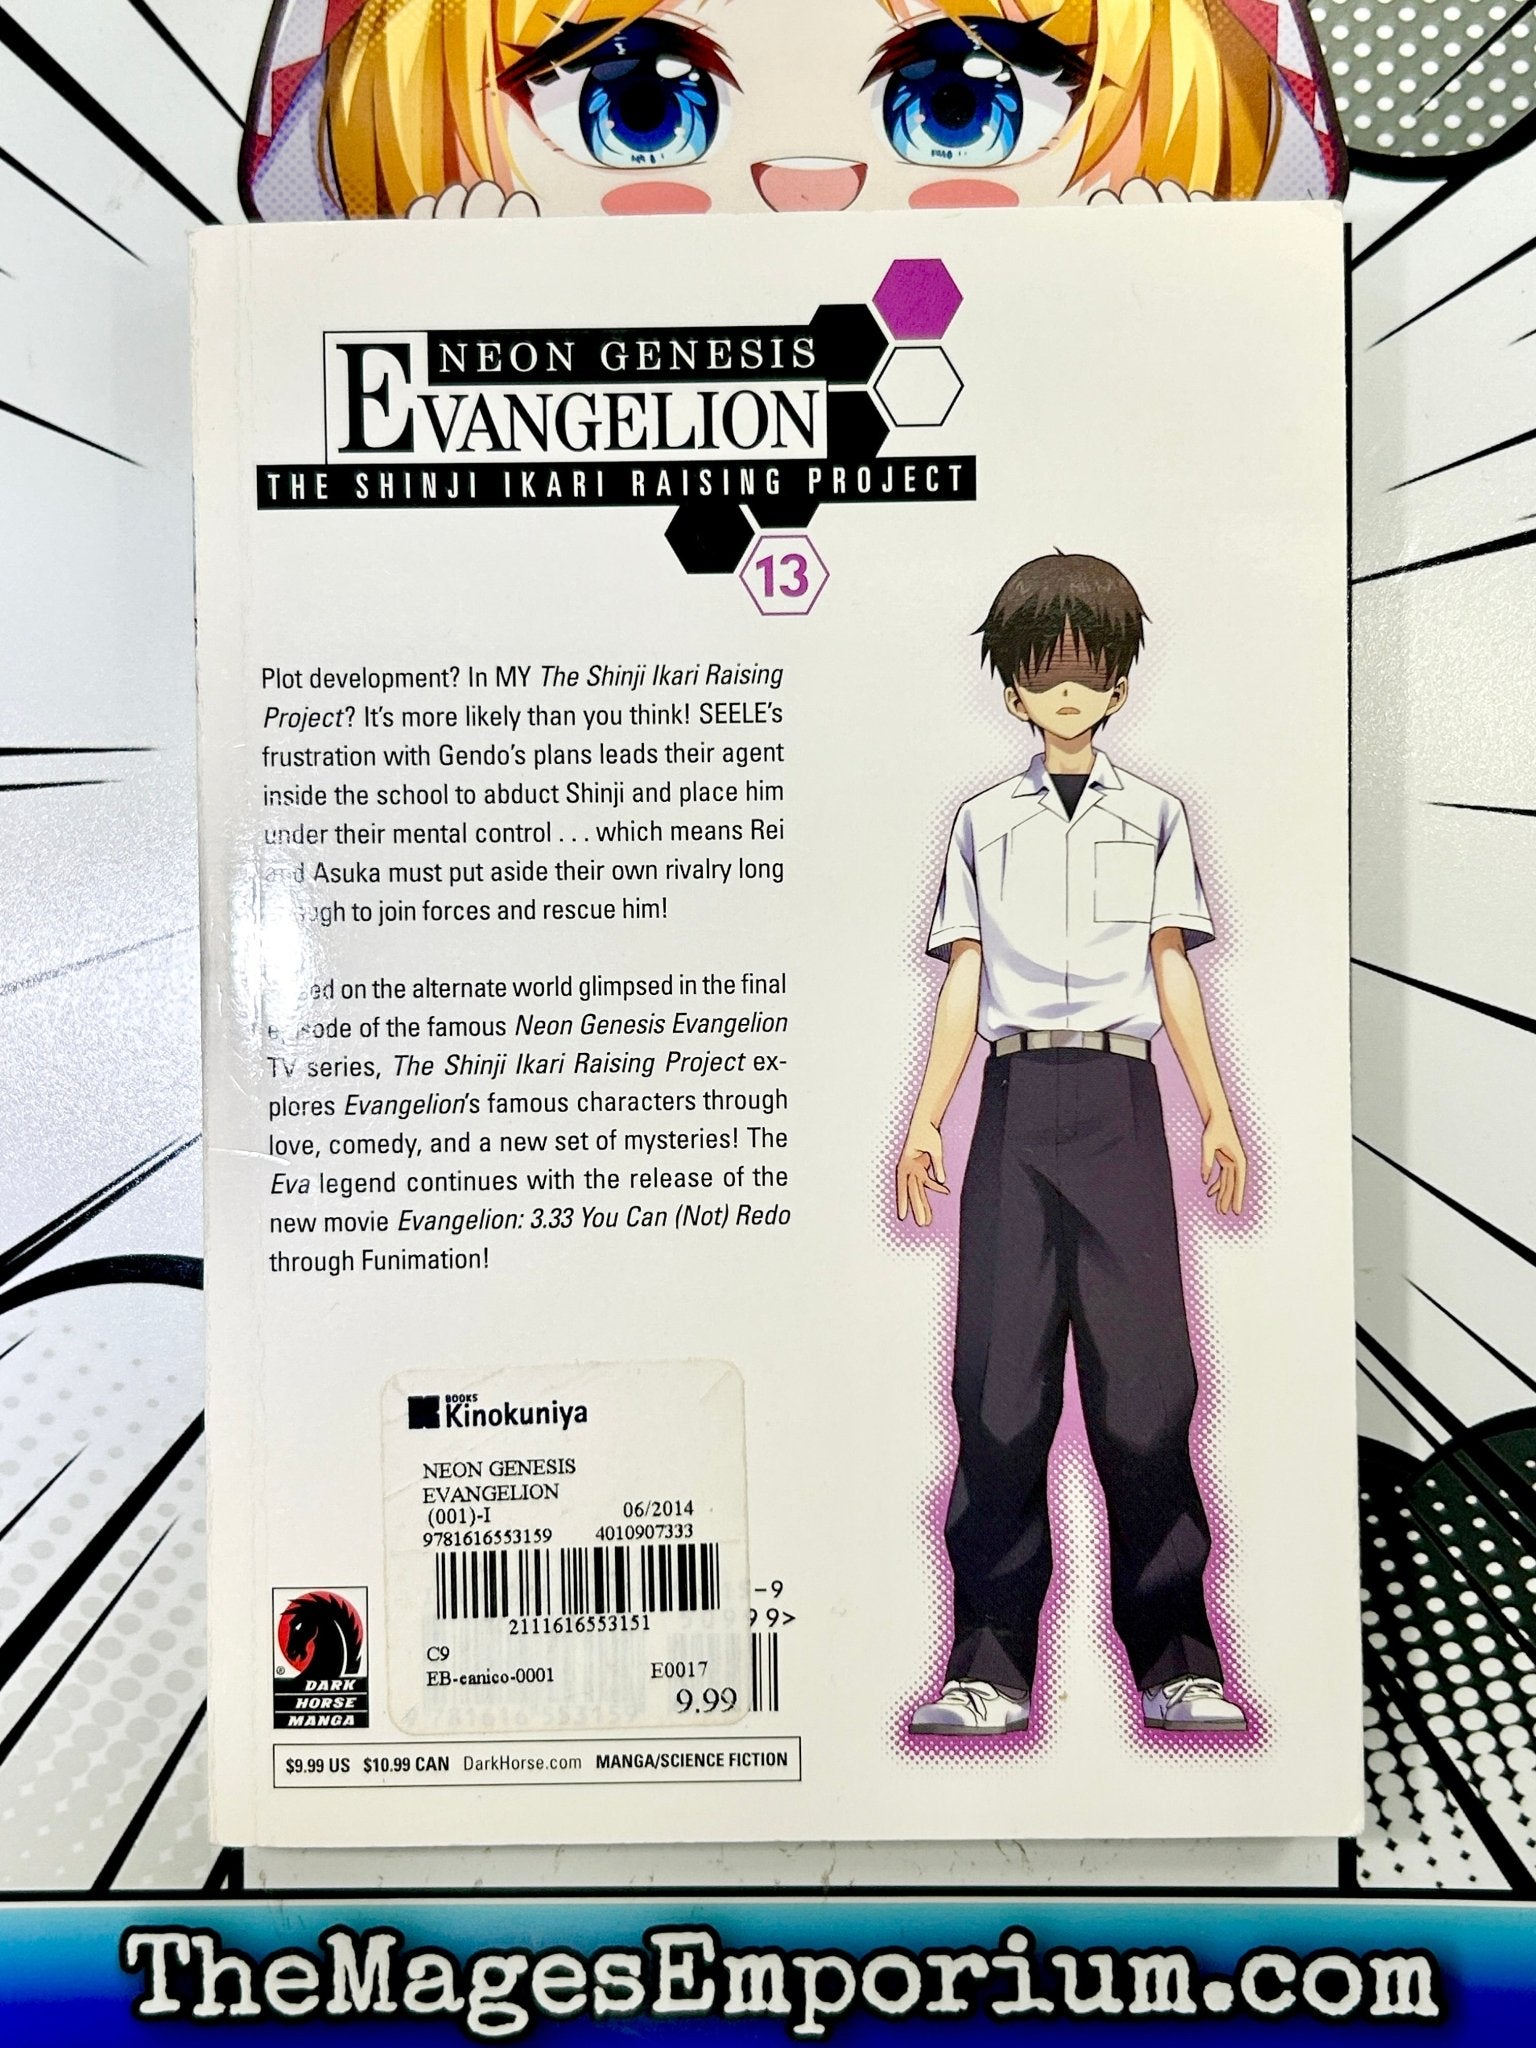 Volume 13 (Neon Genesis Evangelion), Evangelion